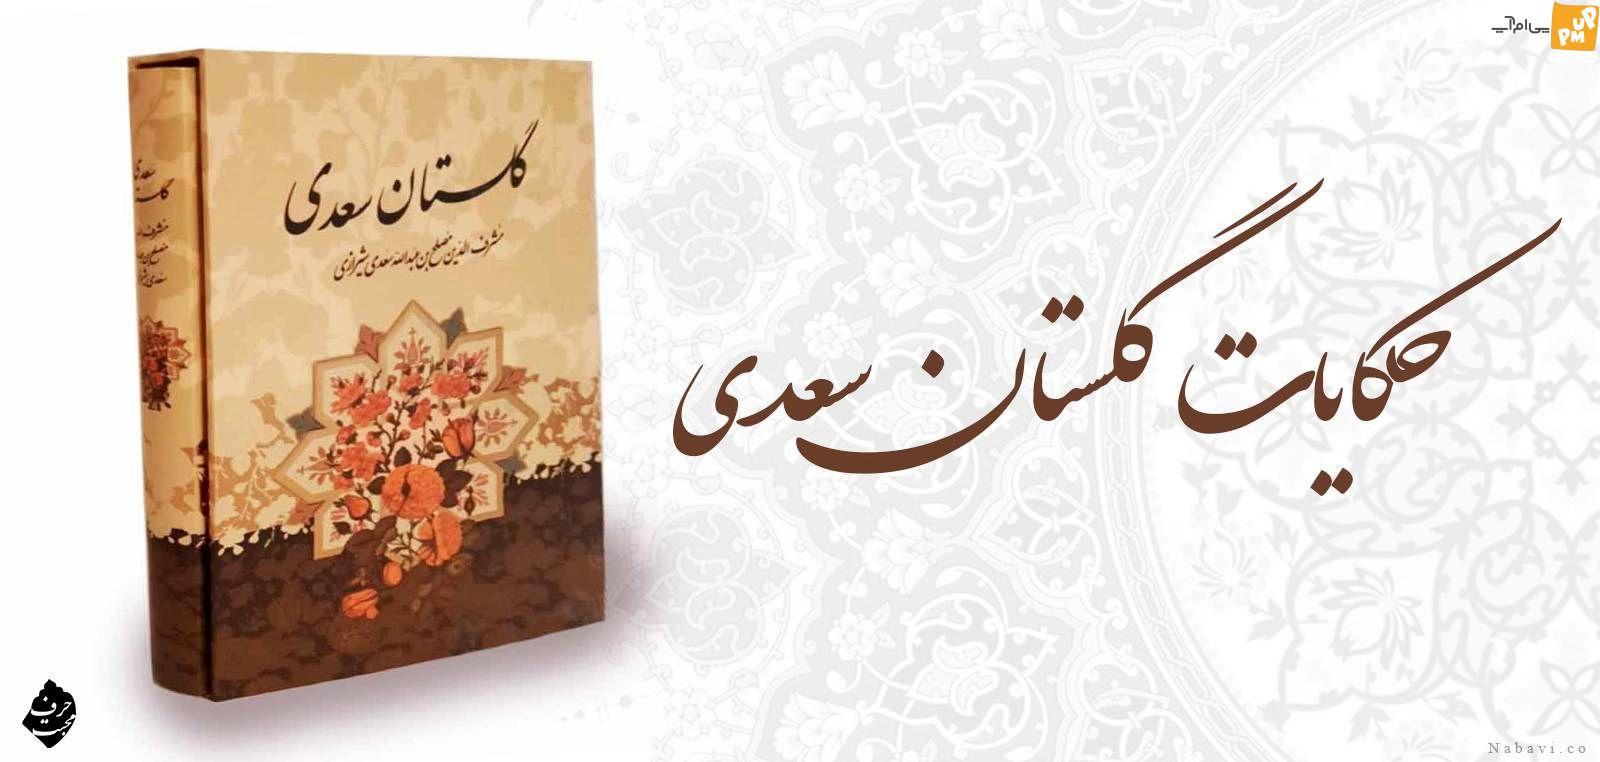 حکایتی عبرت انگیز از گلستان سعدی! / آرزوی مرگ درویش مستجاب الدعوه برای مسلمانان!